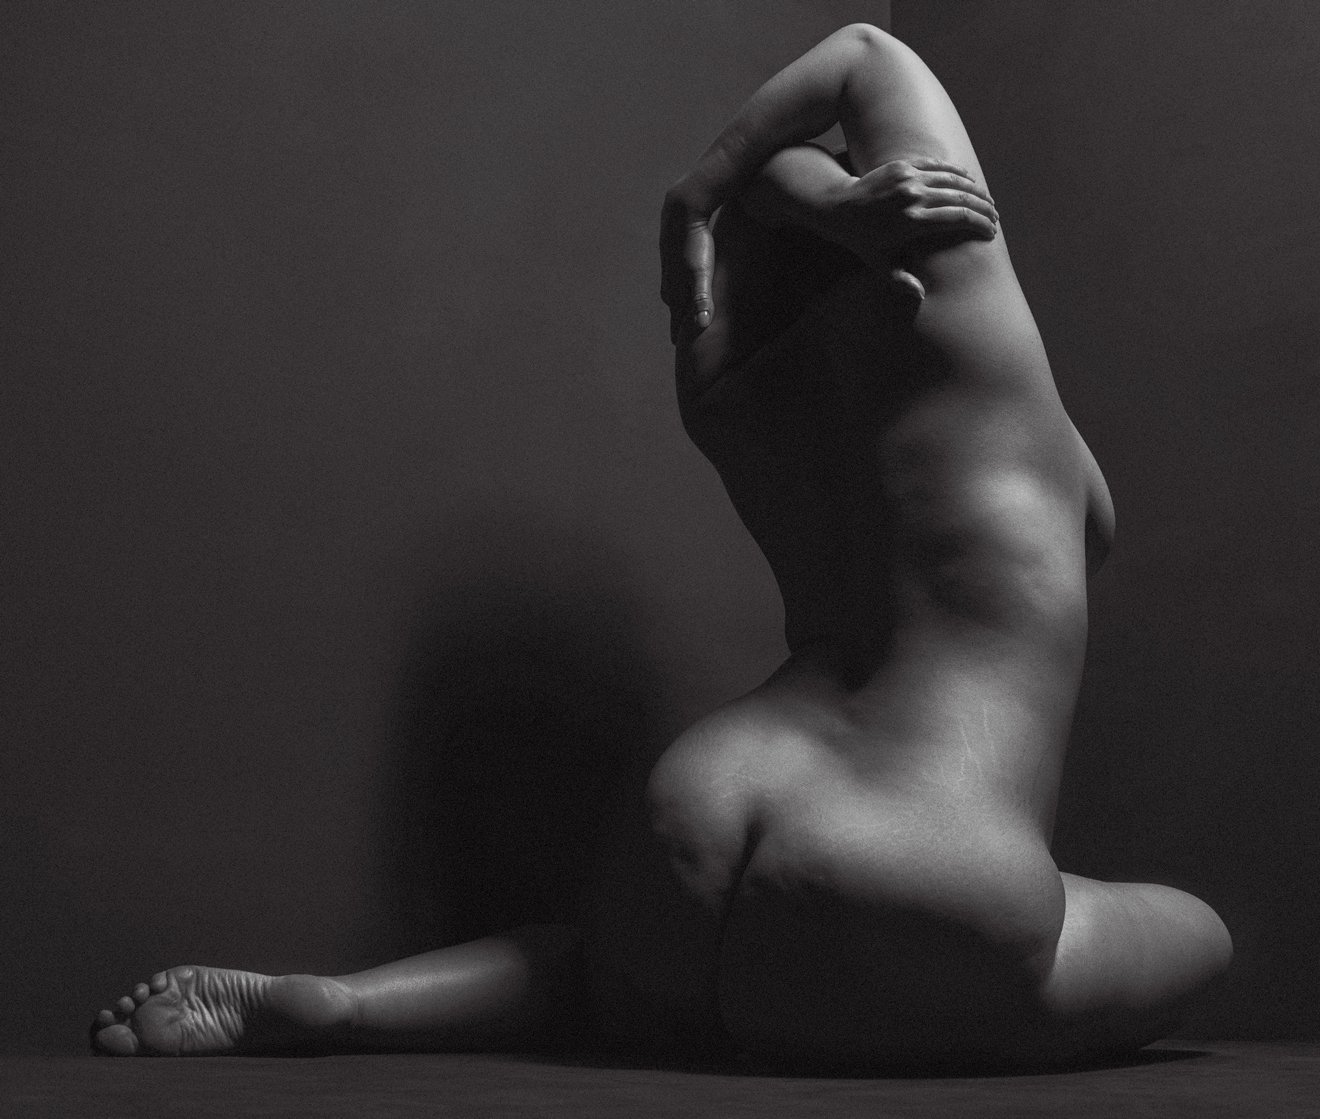 ashley Graham full nude for V magazine.